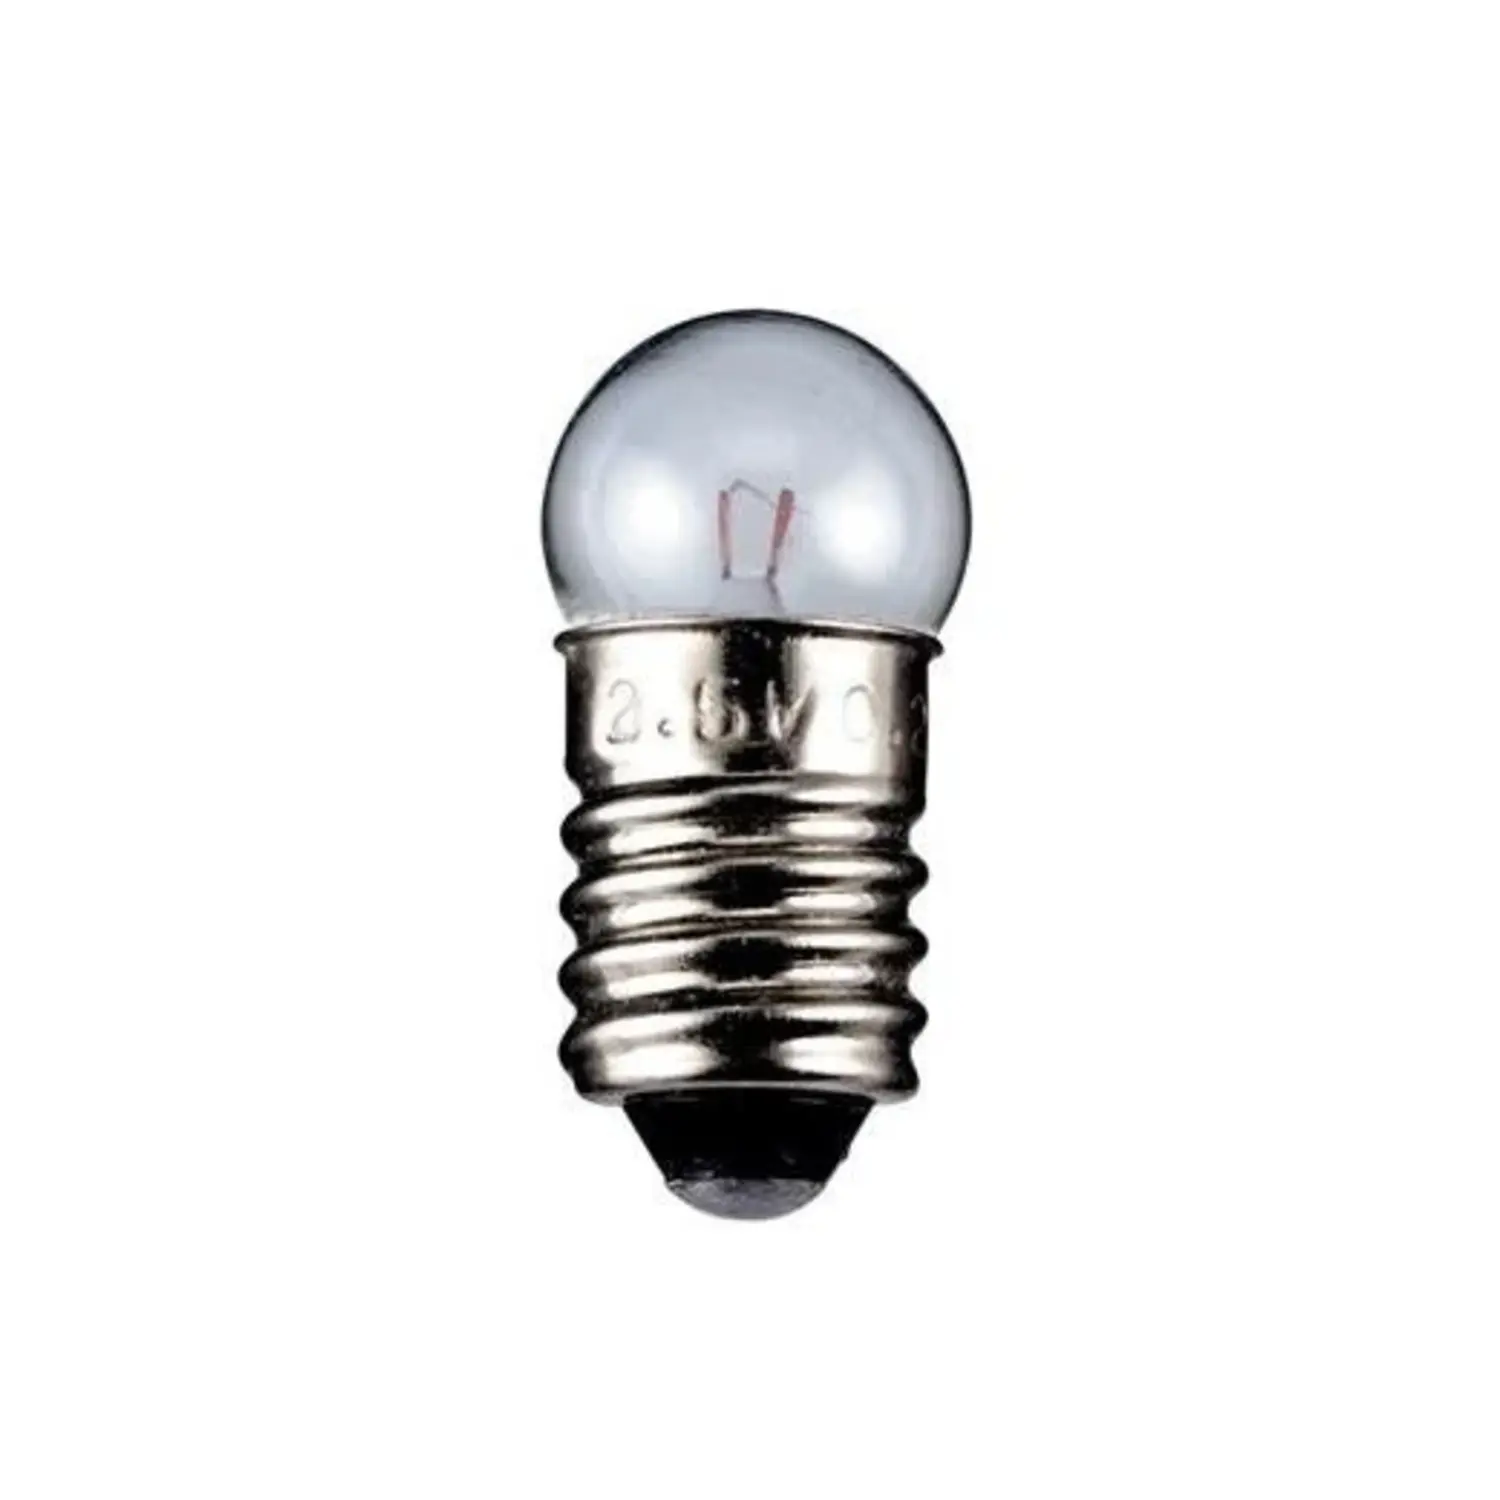 immagine del prodotto lampadina globulare sferetta chiara modellismo presepe e10 1,10 watt 3,7 volt